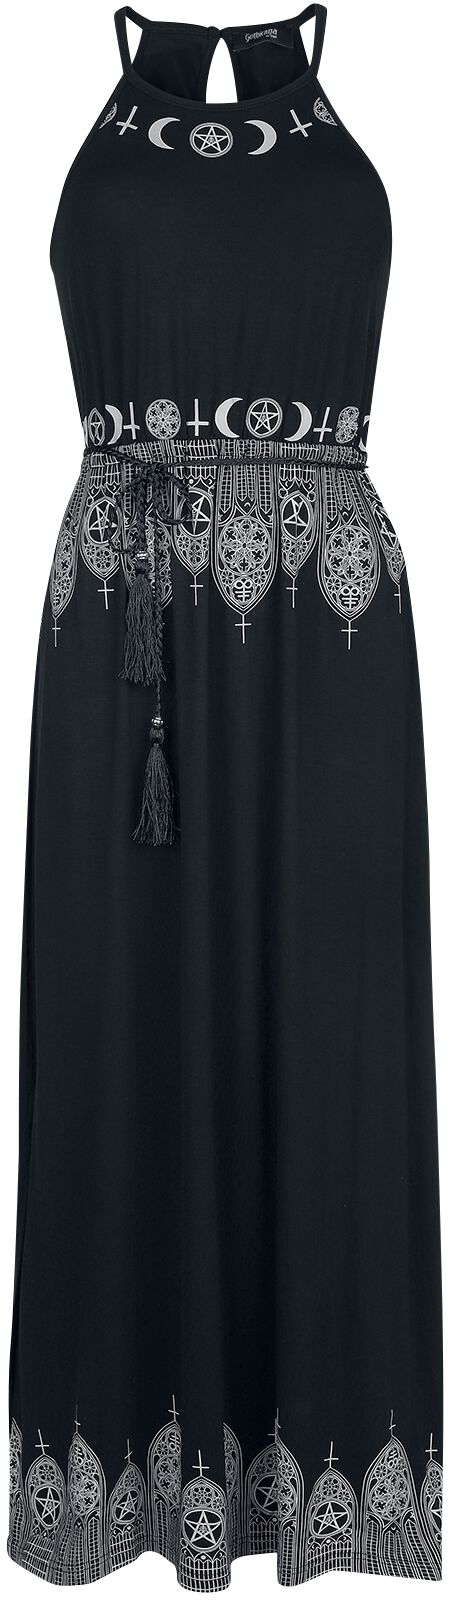 Gothicana by EMP Schwarzes Maxikleid mit Prints und schmalem Bindegürtel Langes Kleid schwarz in S